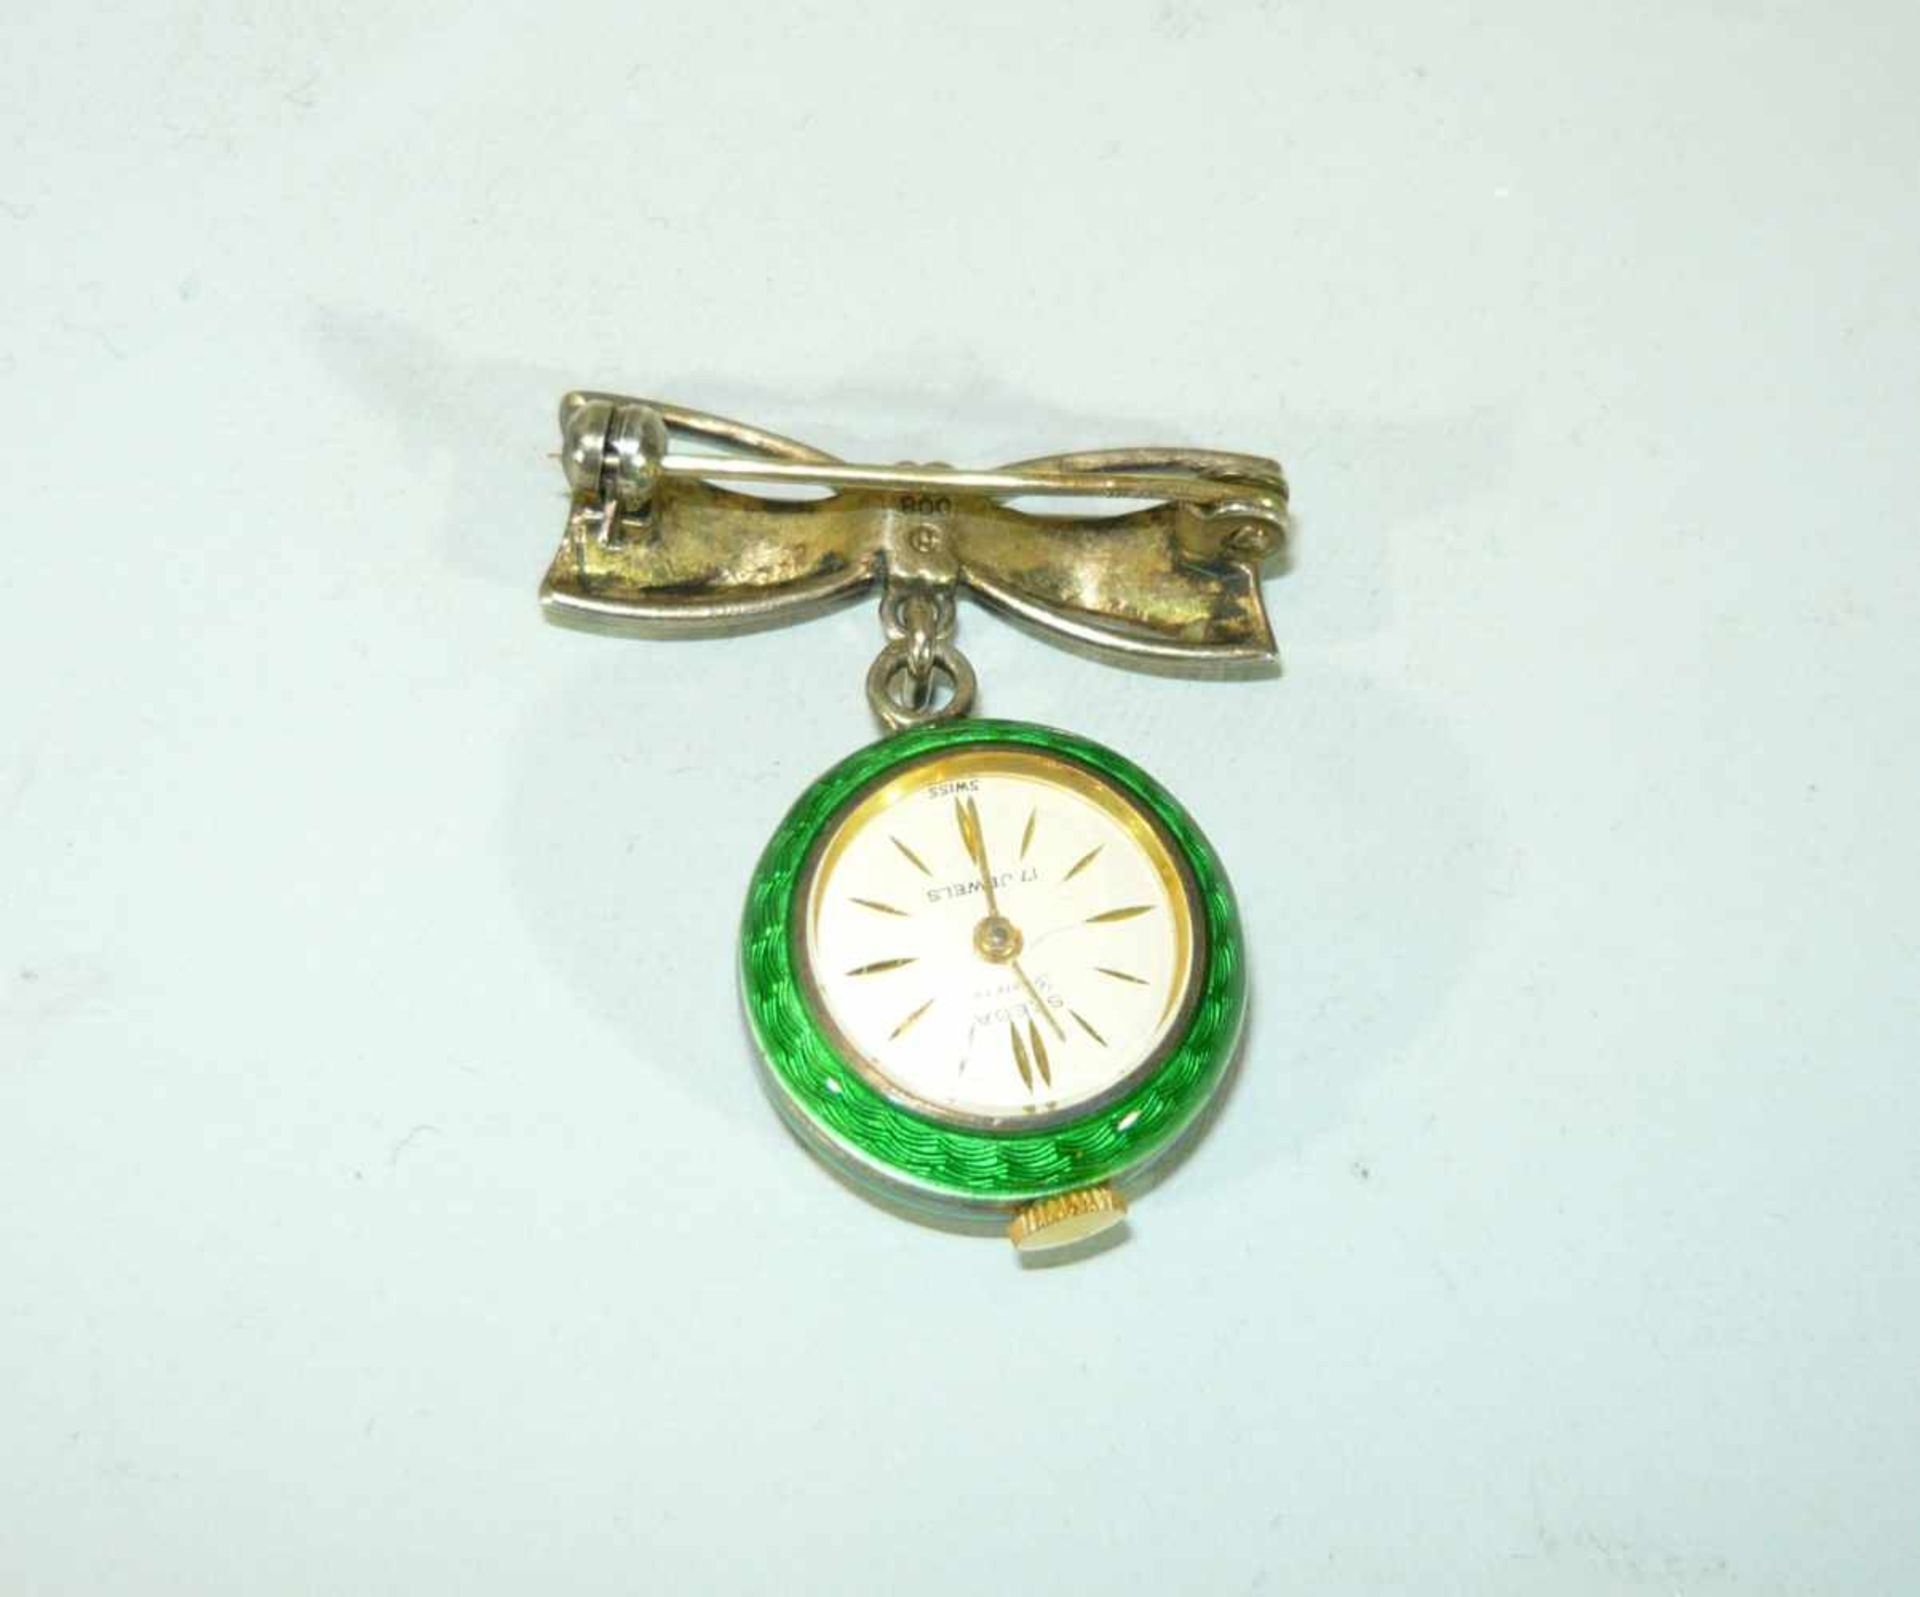 Seltene Broschenuhr in 800er Silber. Grün emailliert. Uhr läuft, jedoch ohne Garantie.Rare broach - Bild 2 aus 2